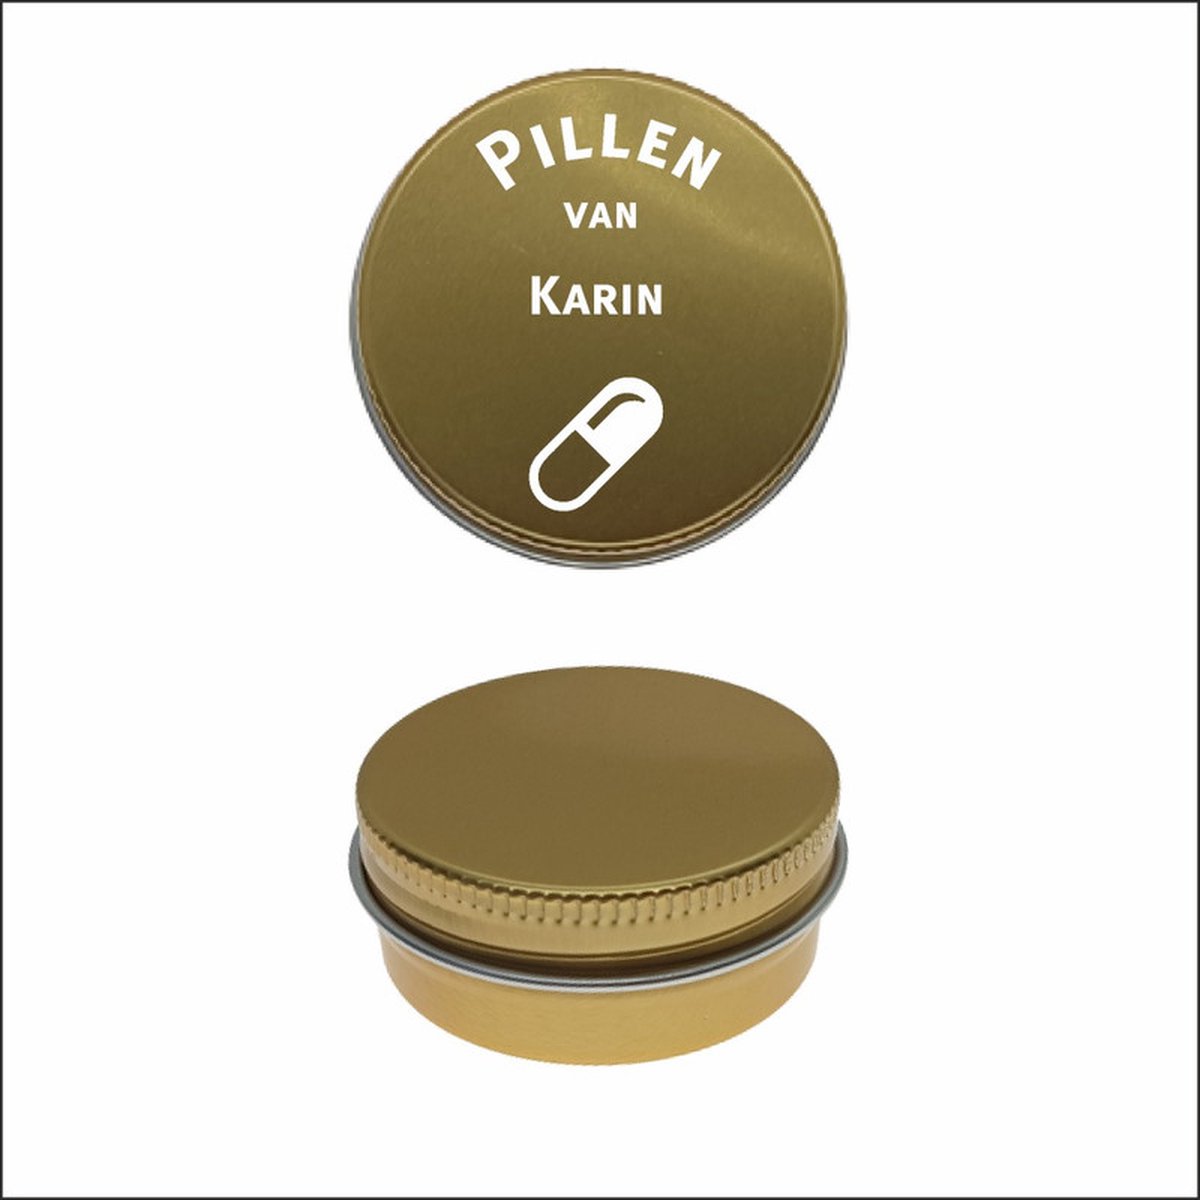 Pillen Blikje Met Naam Gravering - Karin